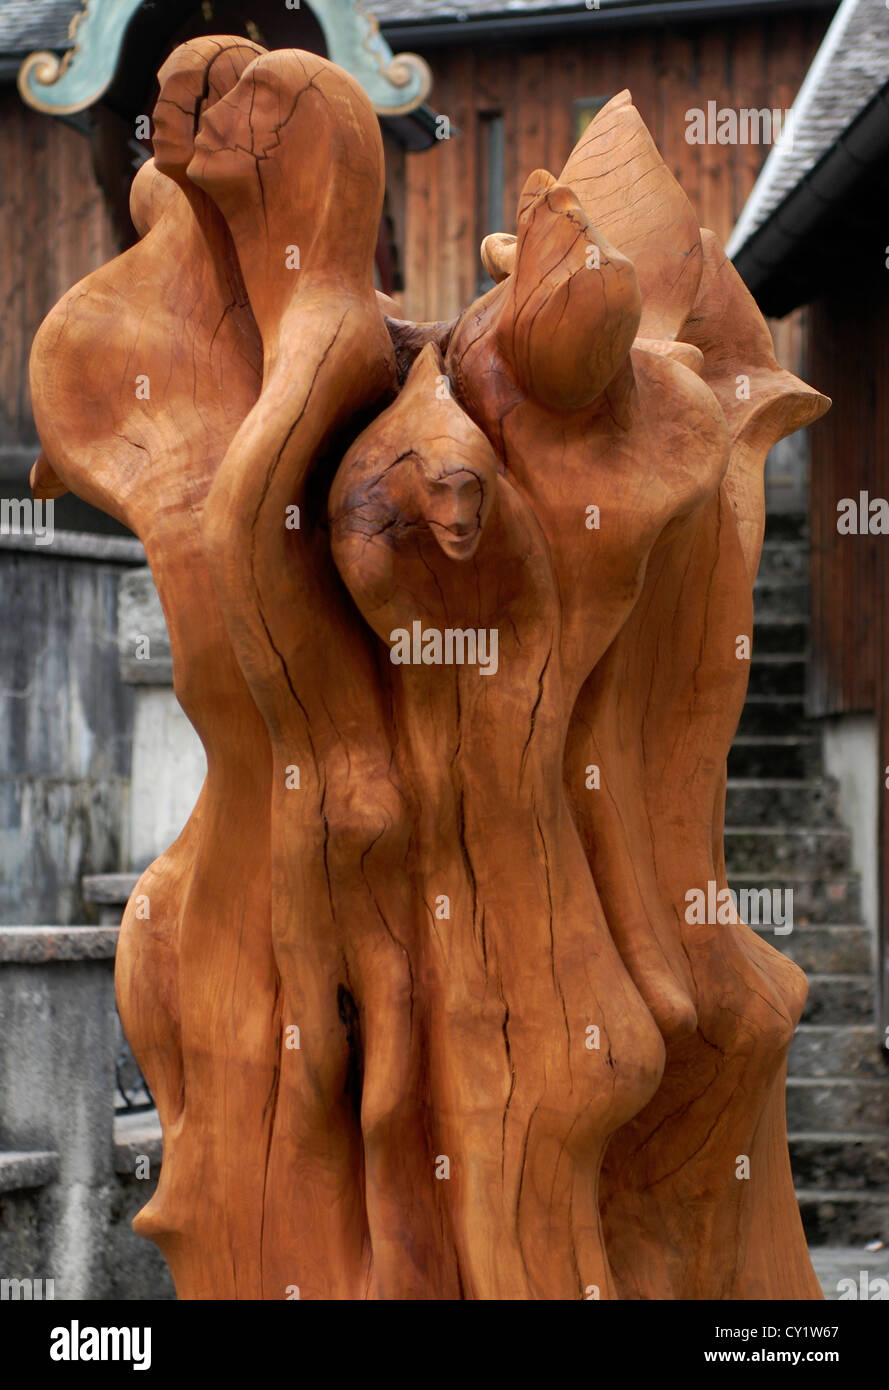 community, Lackner, Ferdinand, Kapitelplatz, Sculpture Die Gemeinschaft, Salzburg,  Austria, Europe Stock Photo